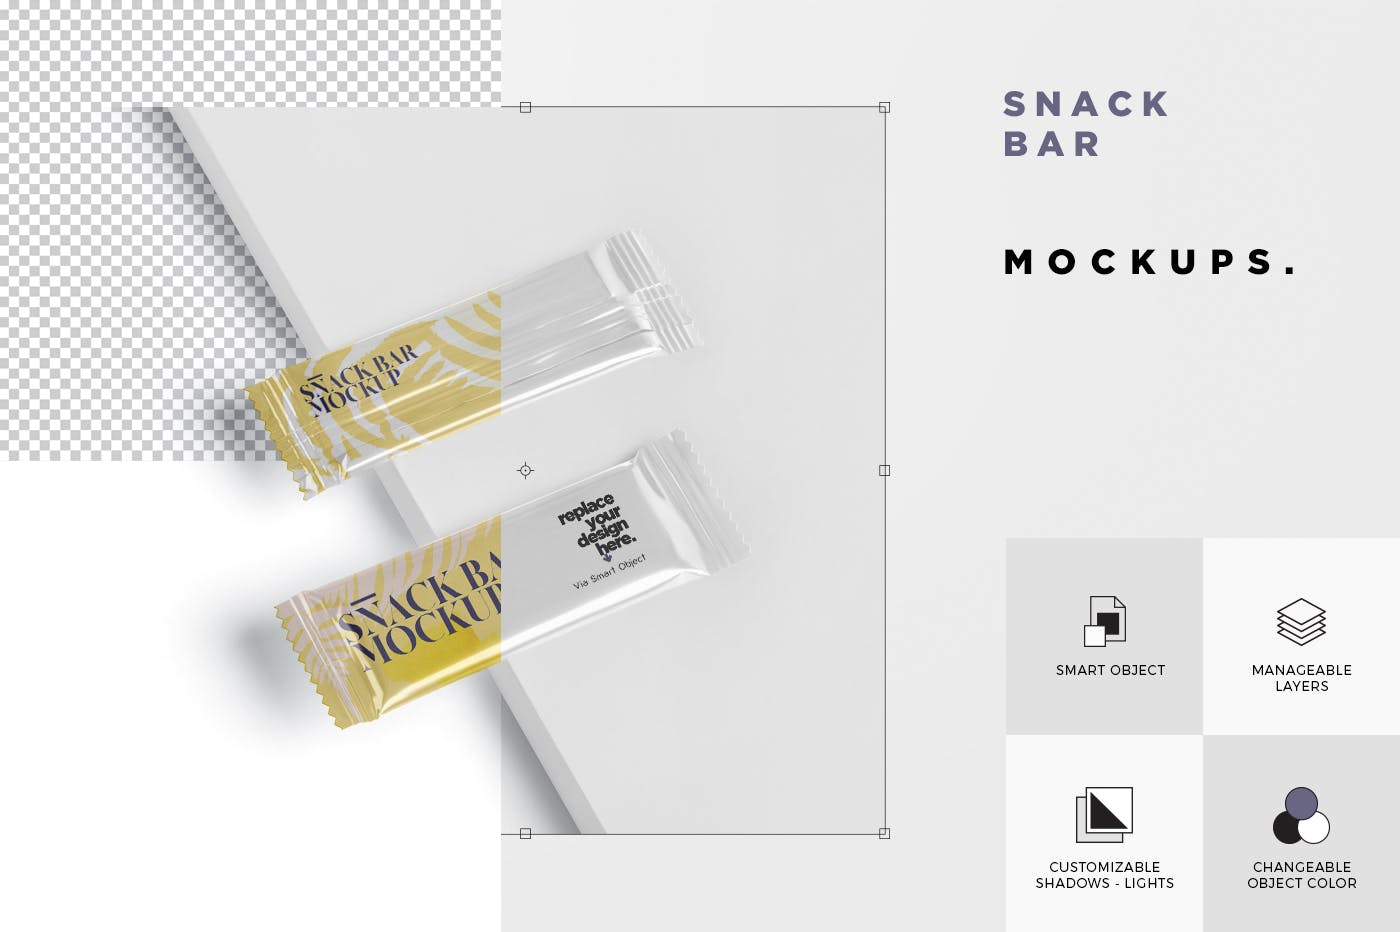 零食糖果包装袋设计效果图第一素材精选 Snack Bar Mockup – Slim Rectangular插图(6)